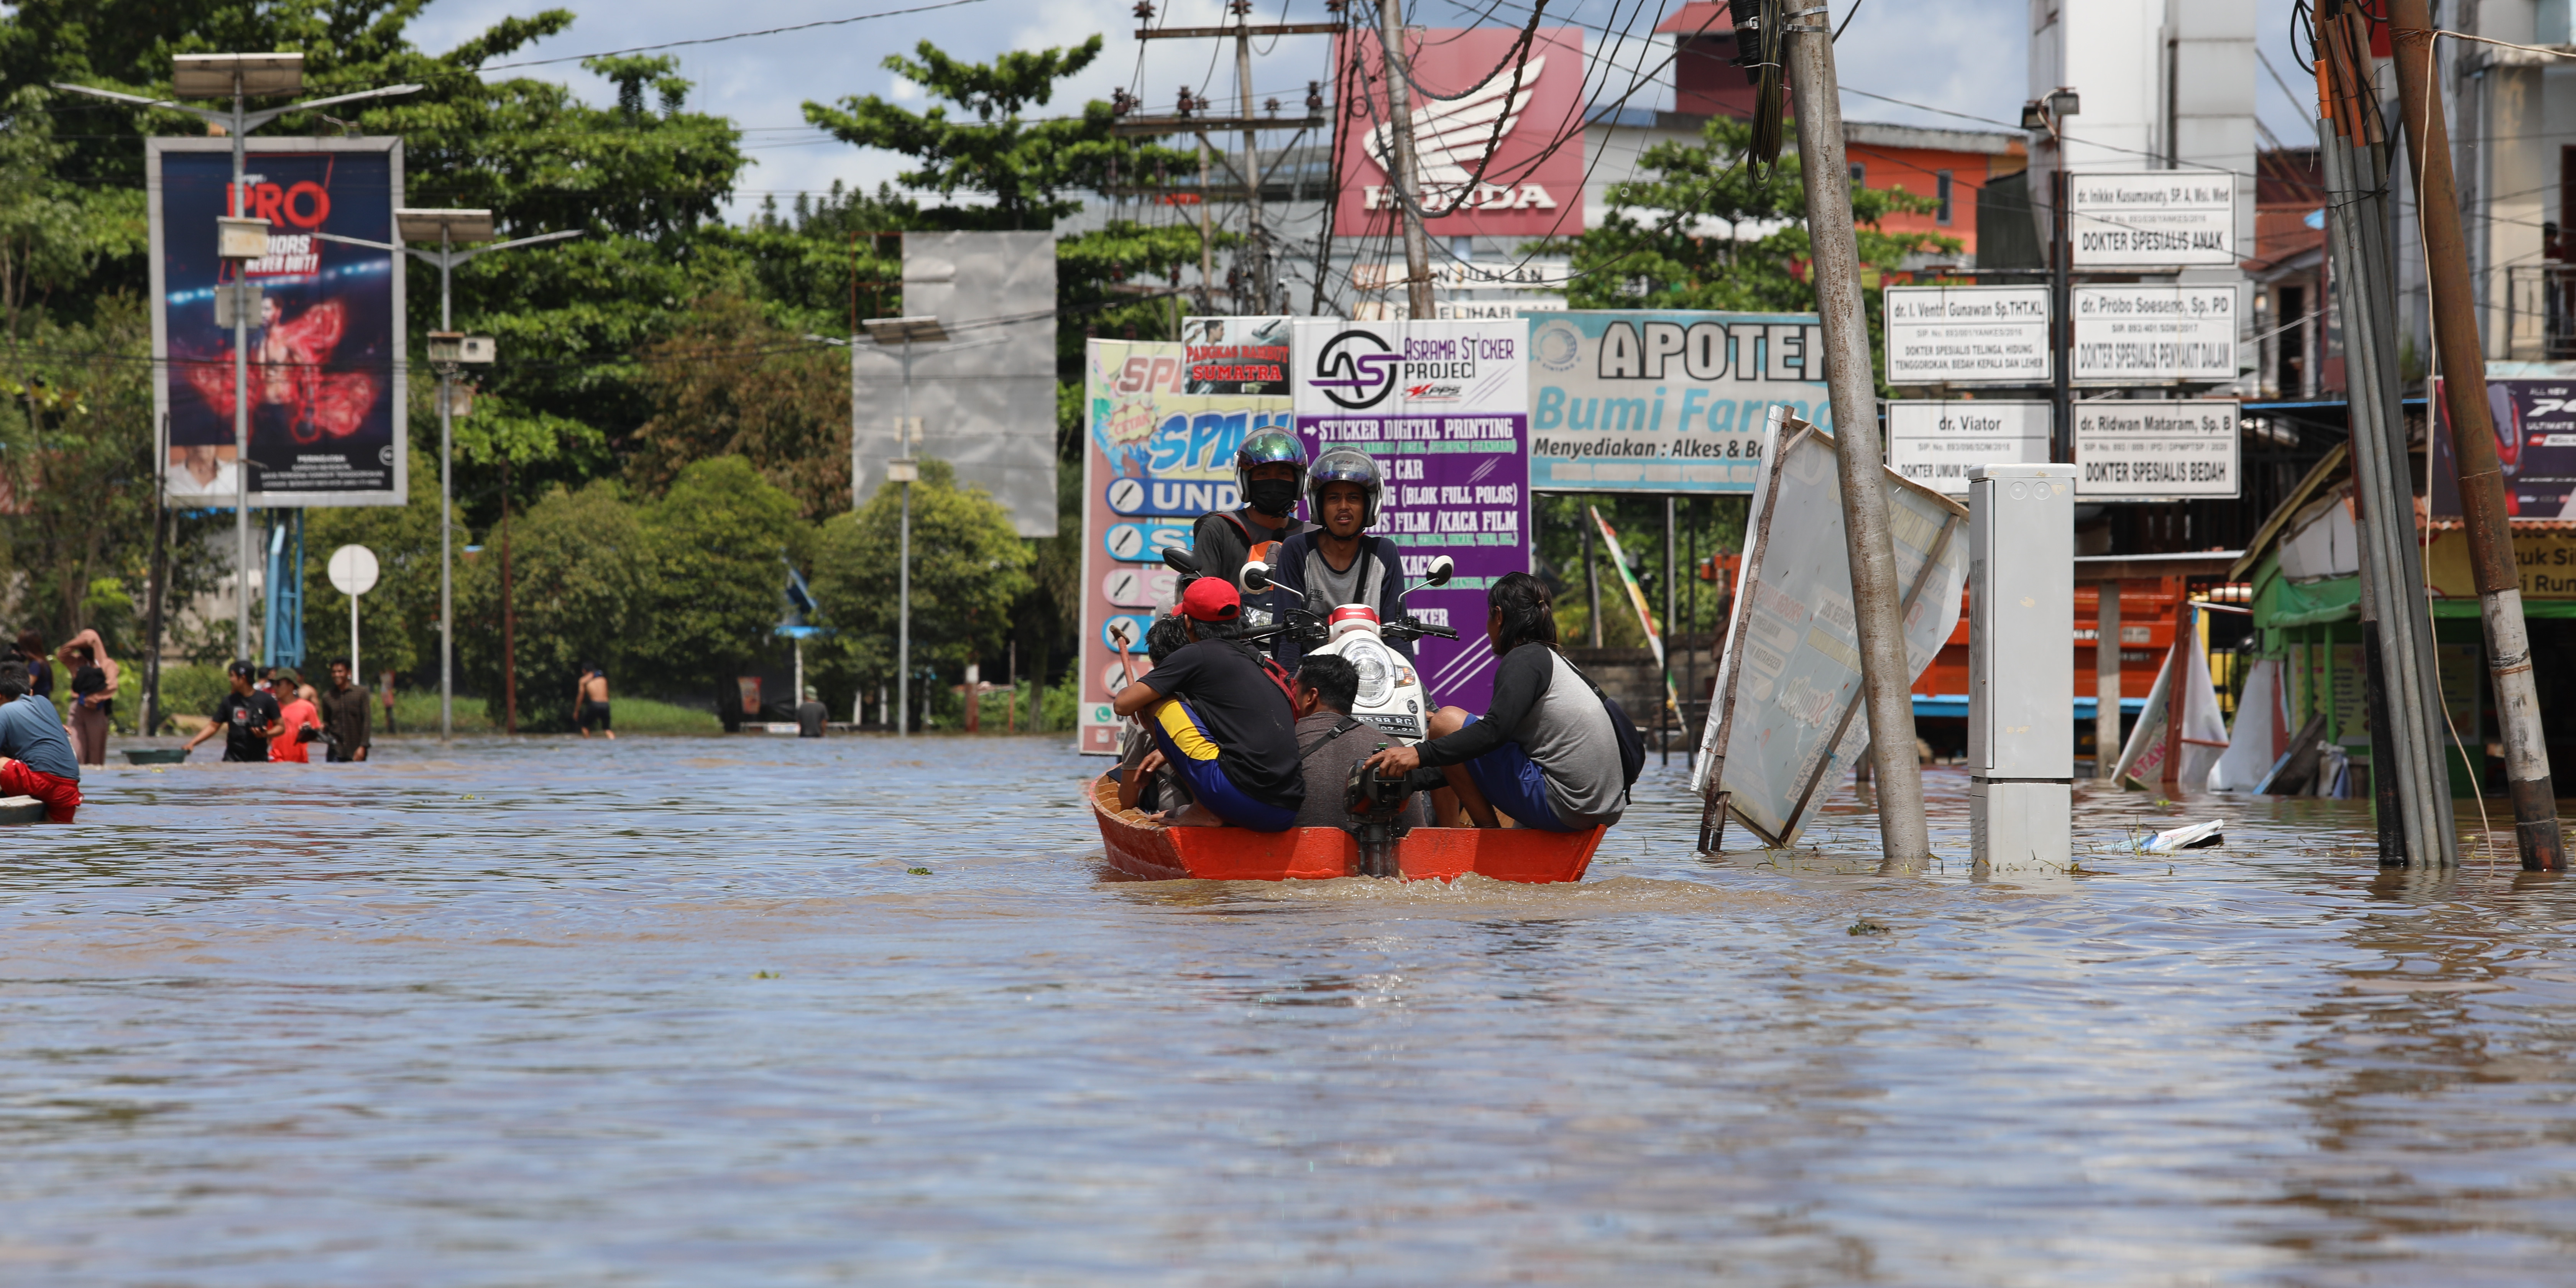 [Update] – Banjir Wilayah Kabupaten Sintang Masih Tinggi Meski Genangan Surut 50 cm